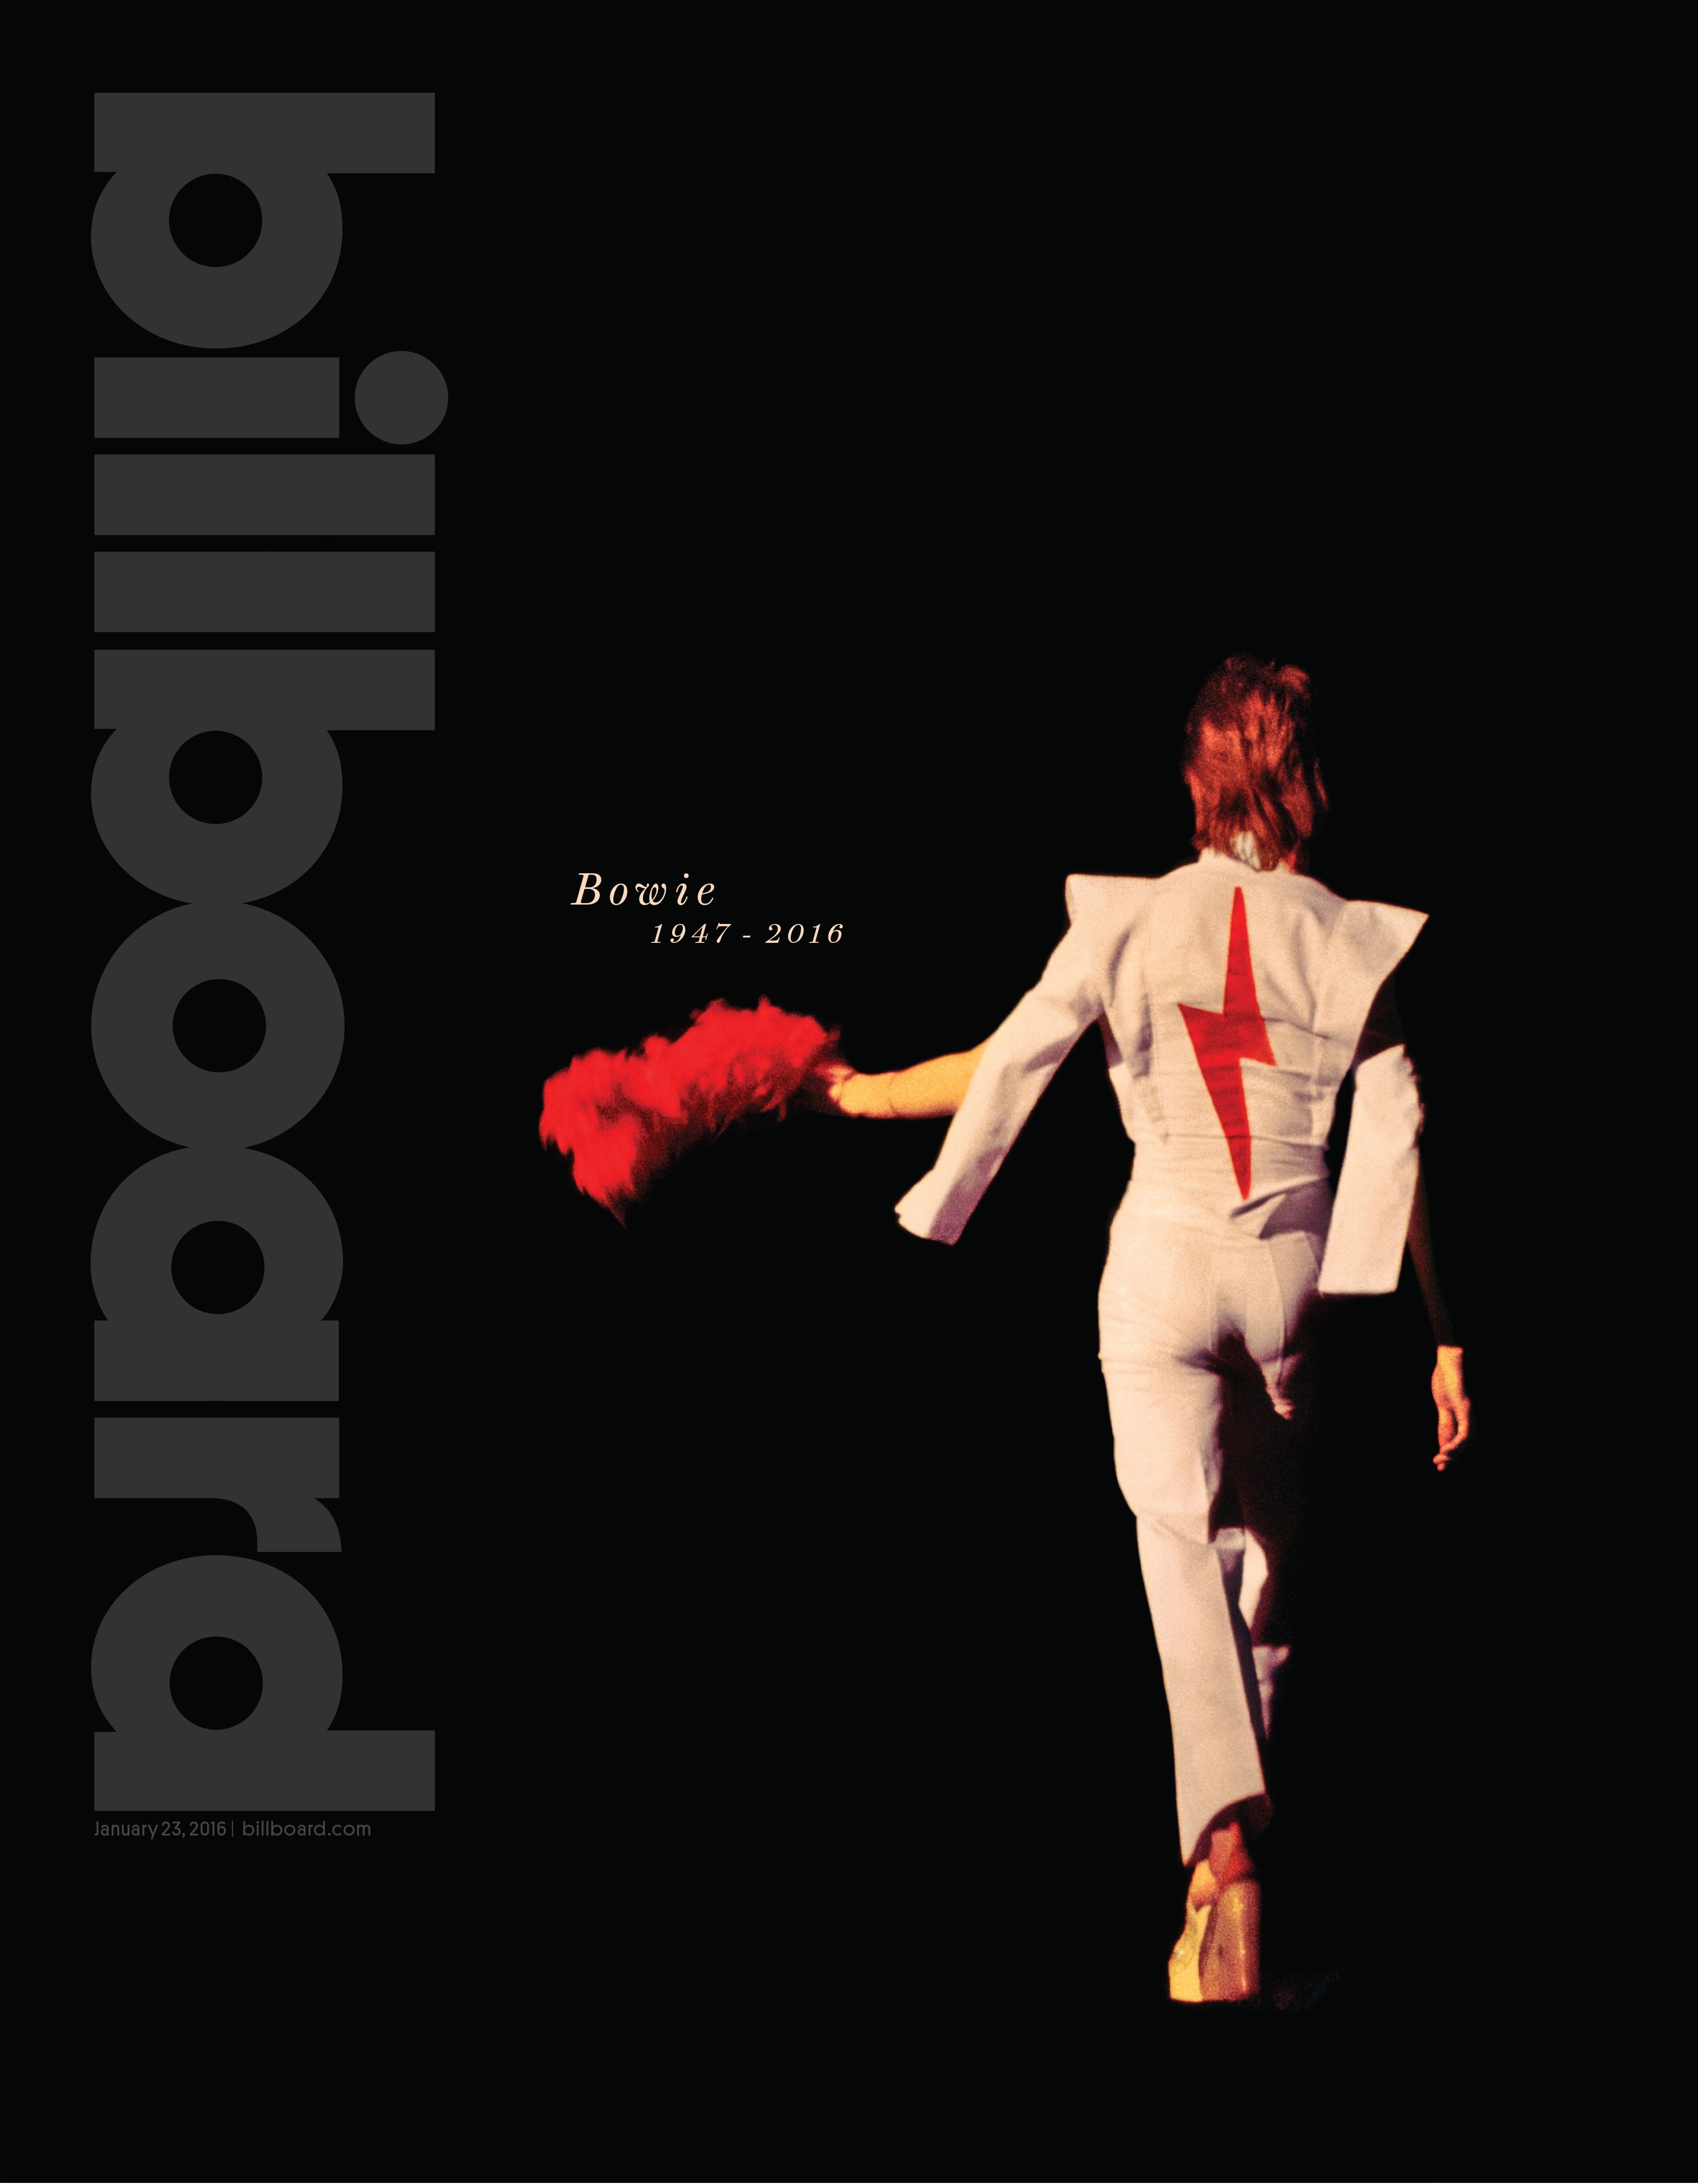 Billboard - "Bowie 1947-2016," January 23